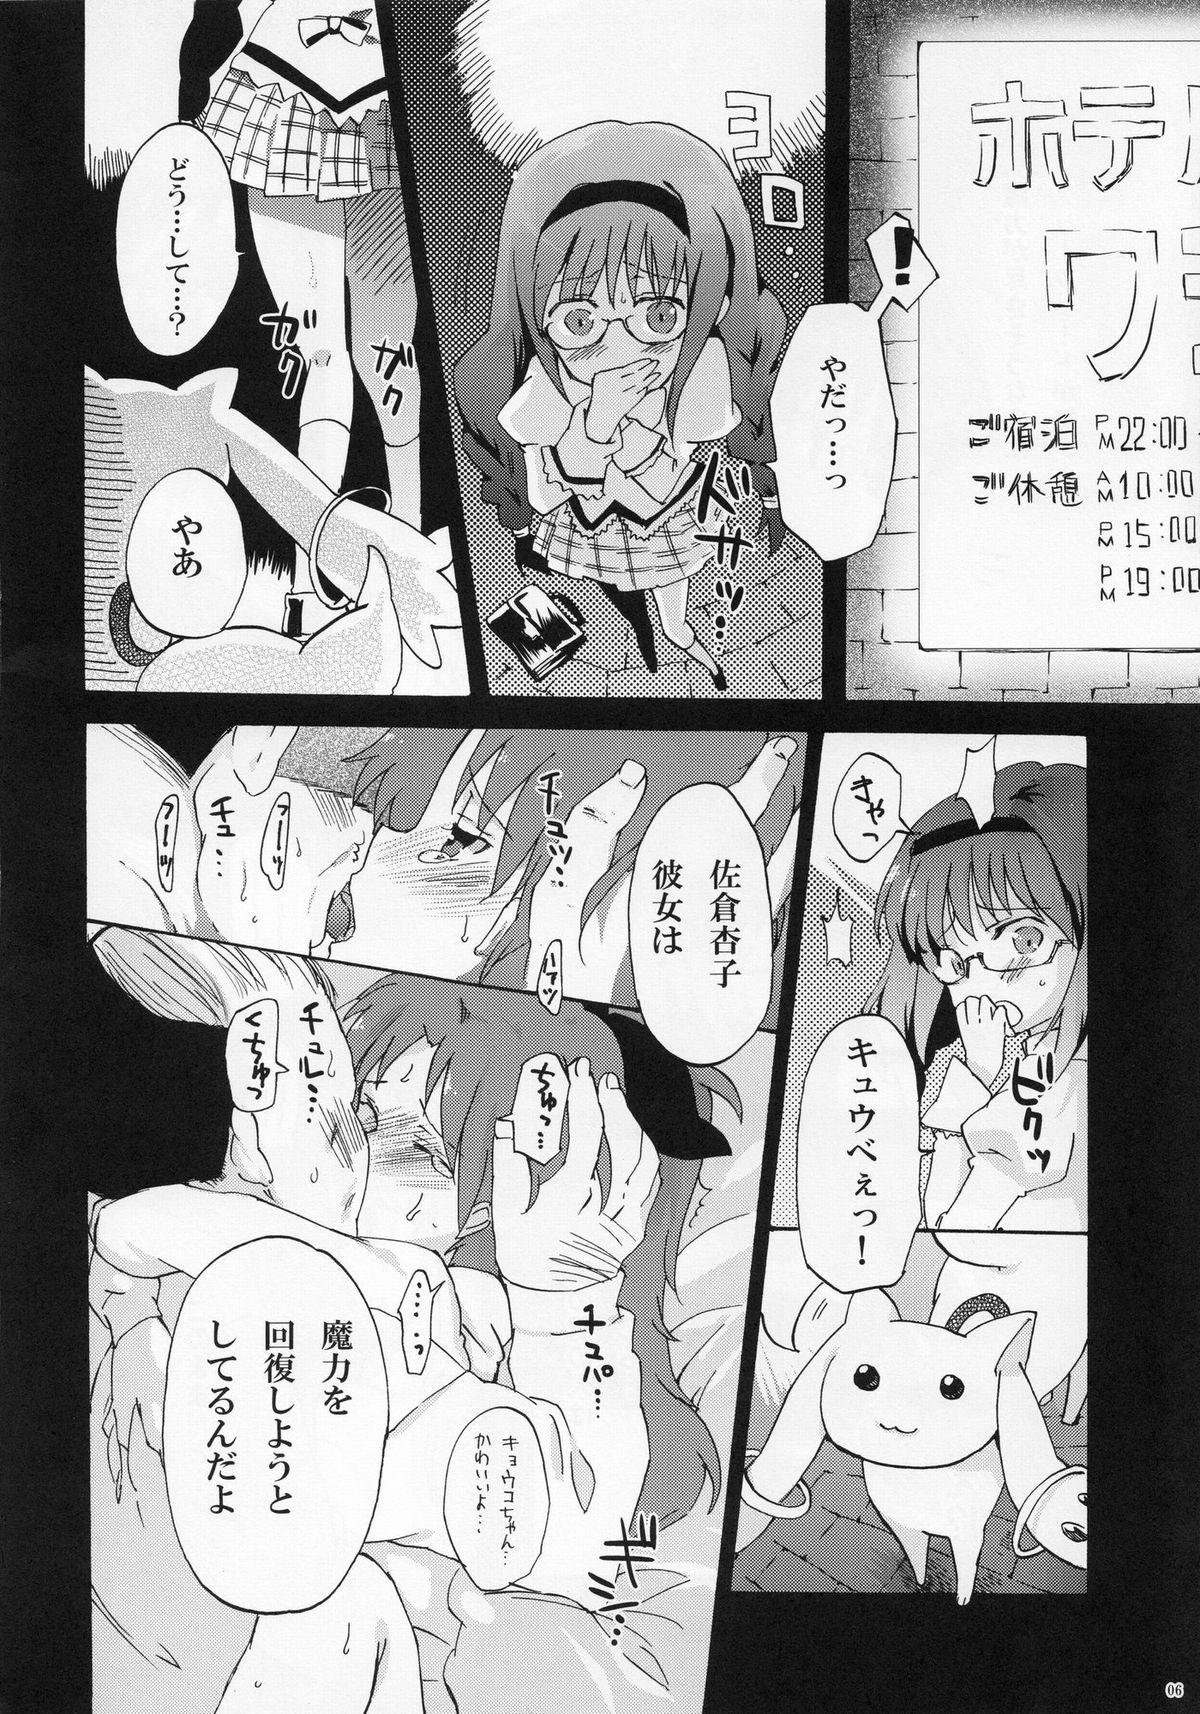 Boobies Homura Otsu - Puella magi madoka magica Teenxxx - Page 6